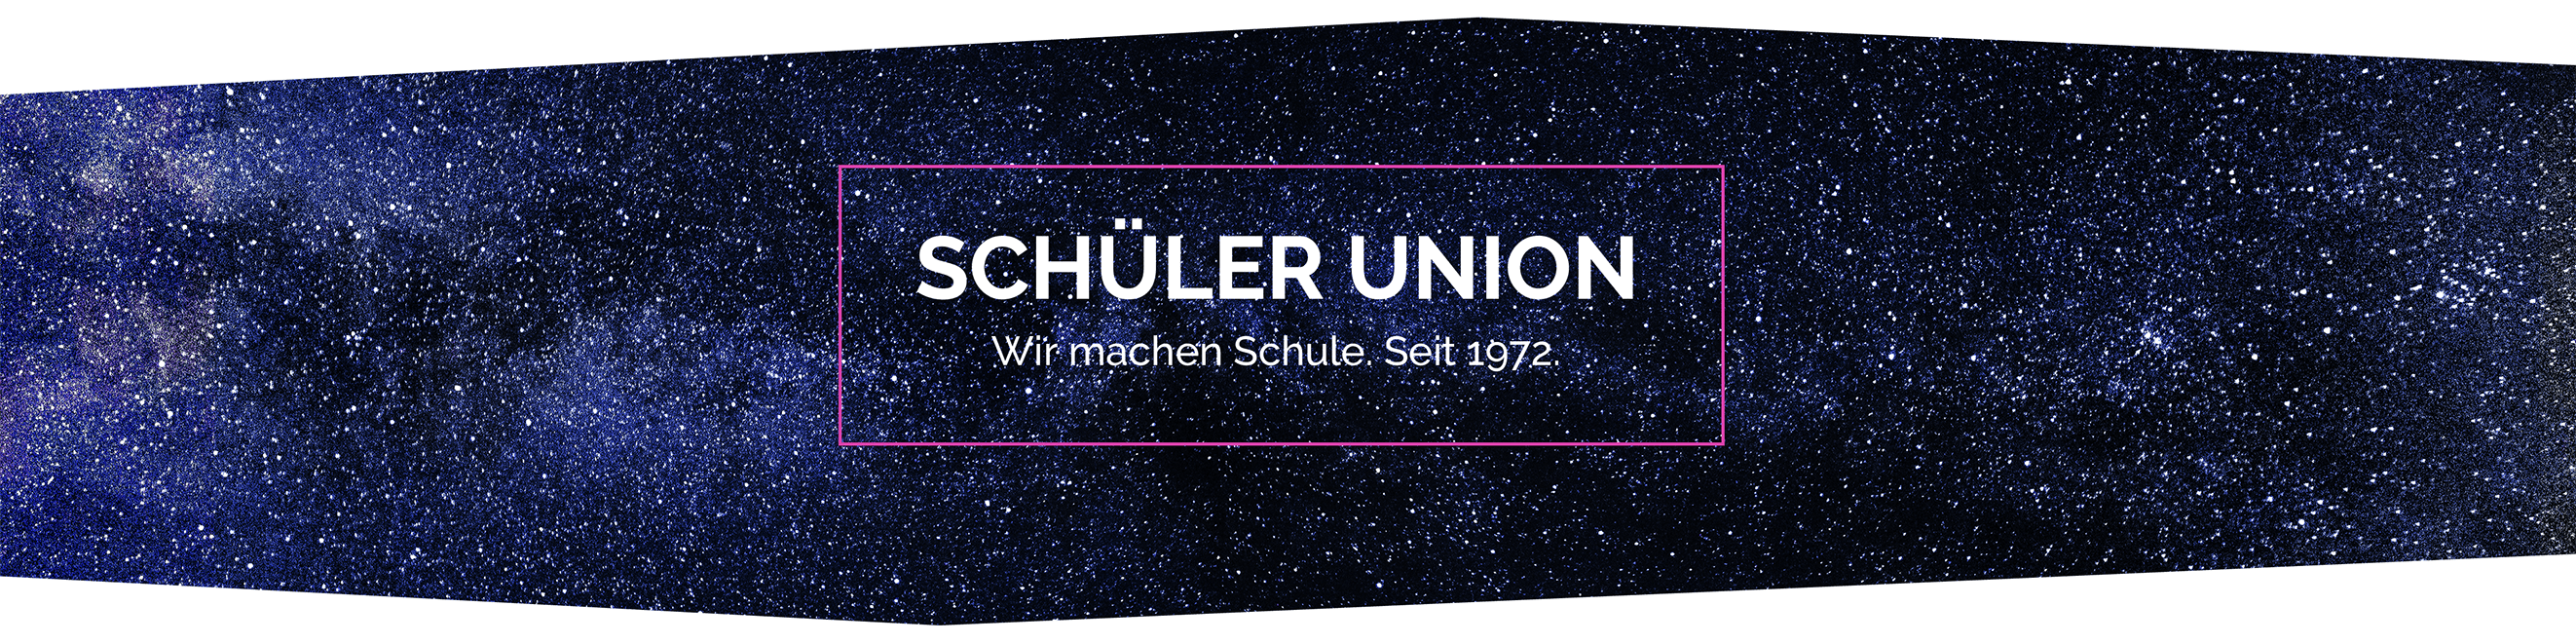 (c) Schueler-union.de